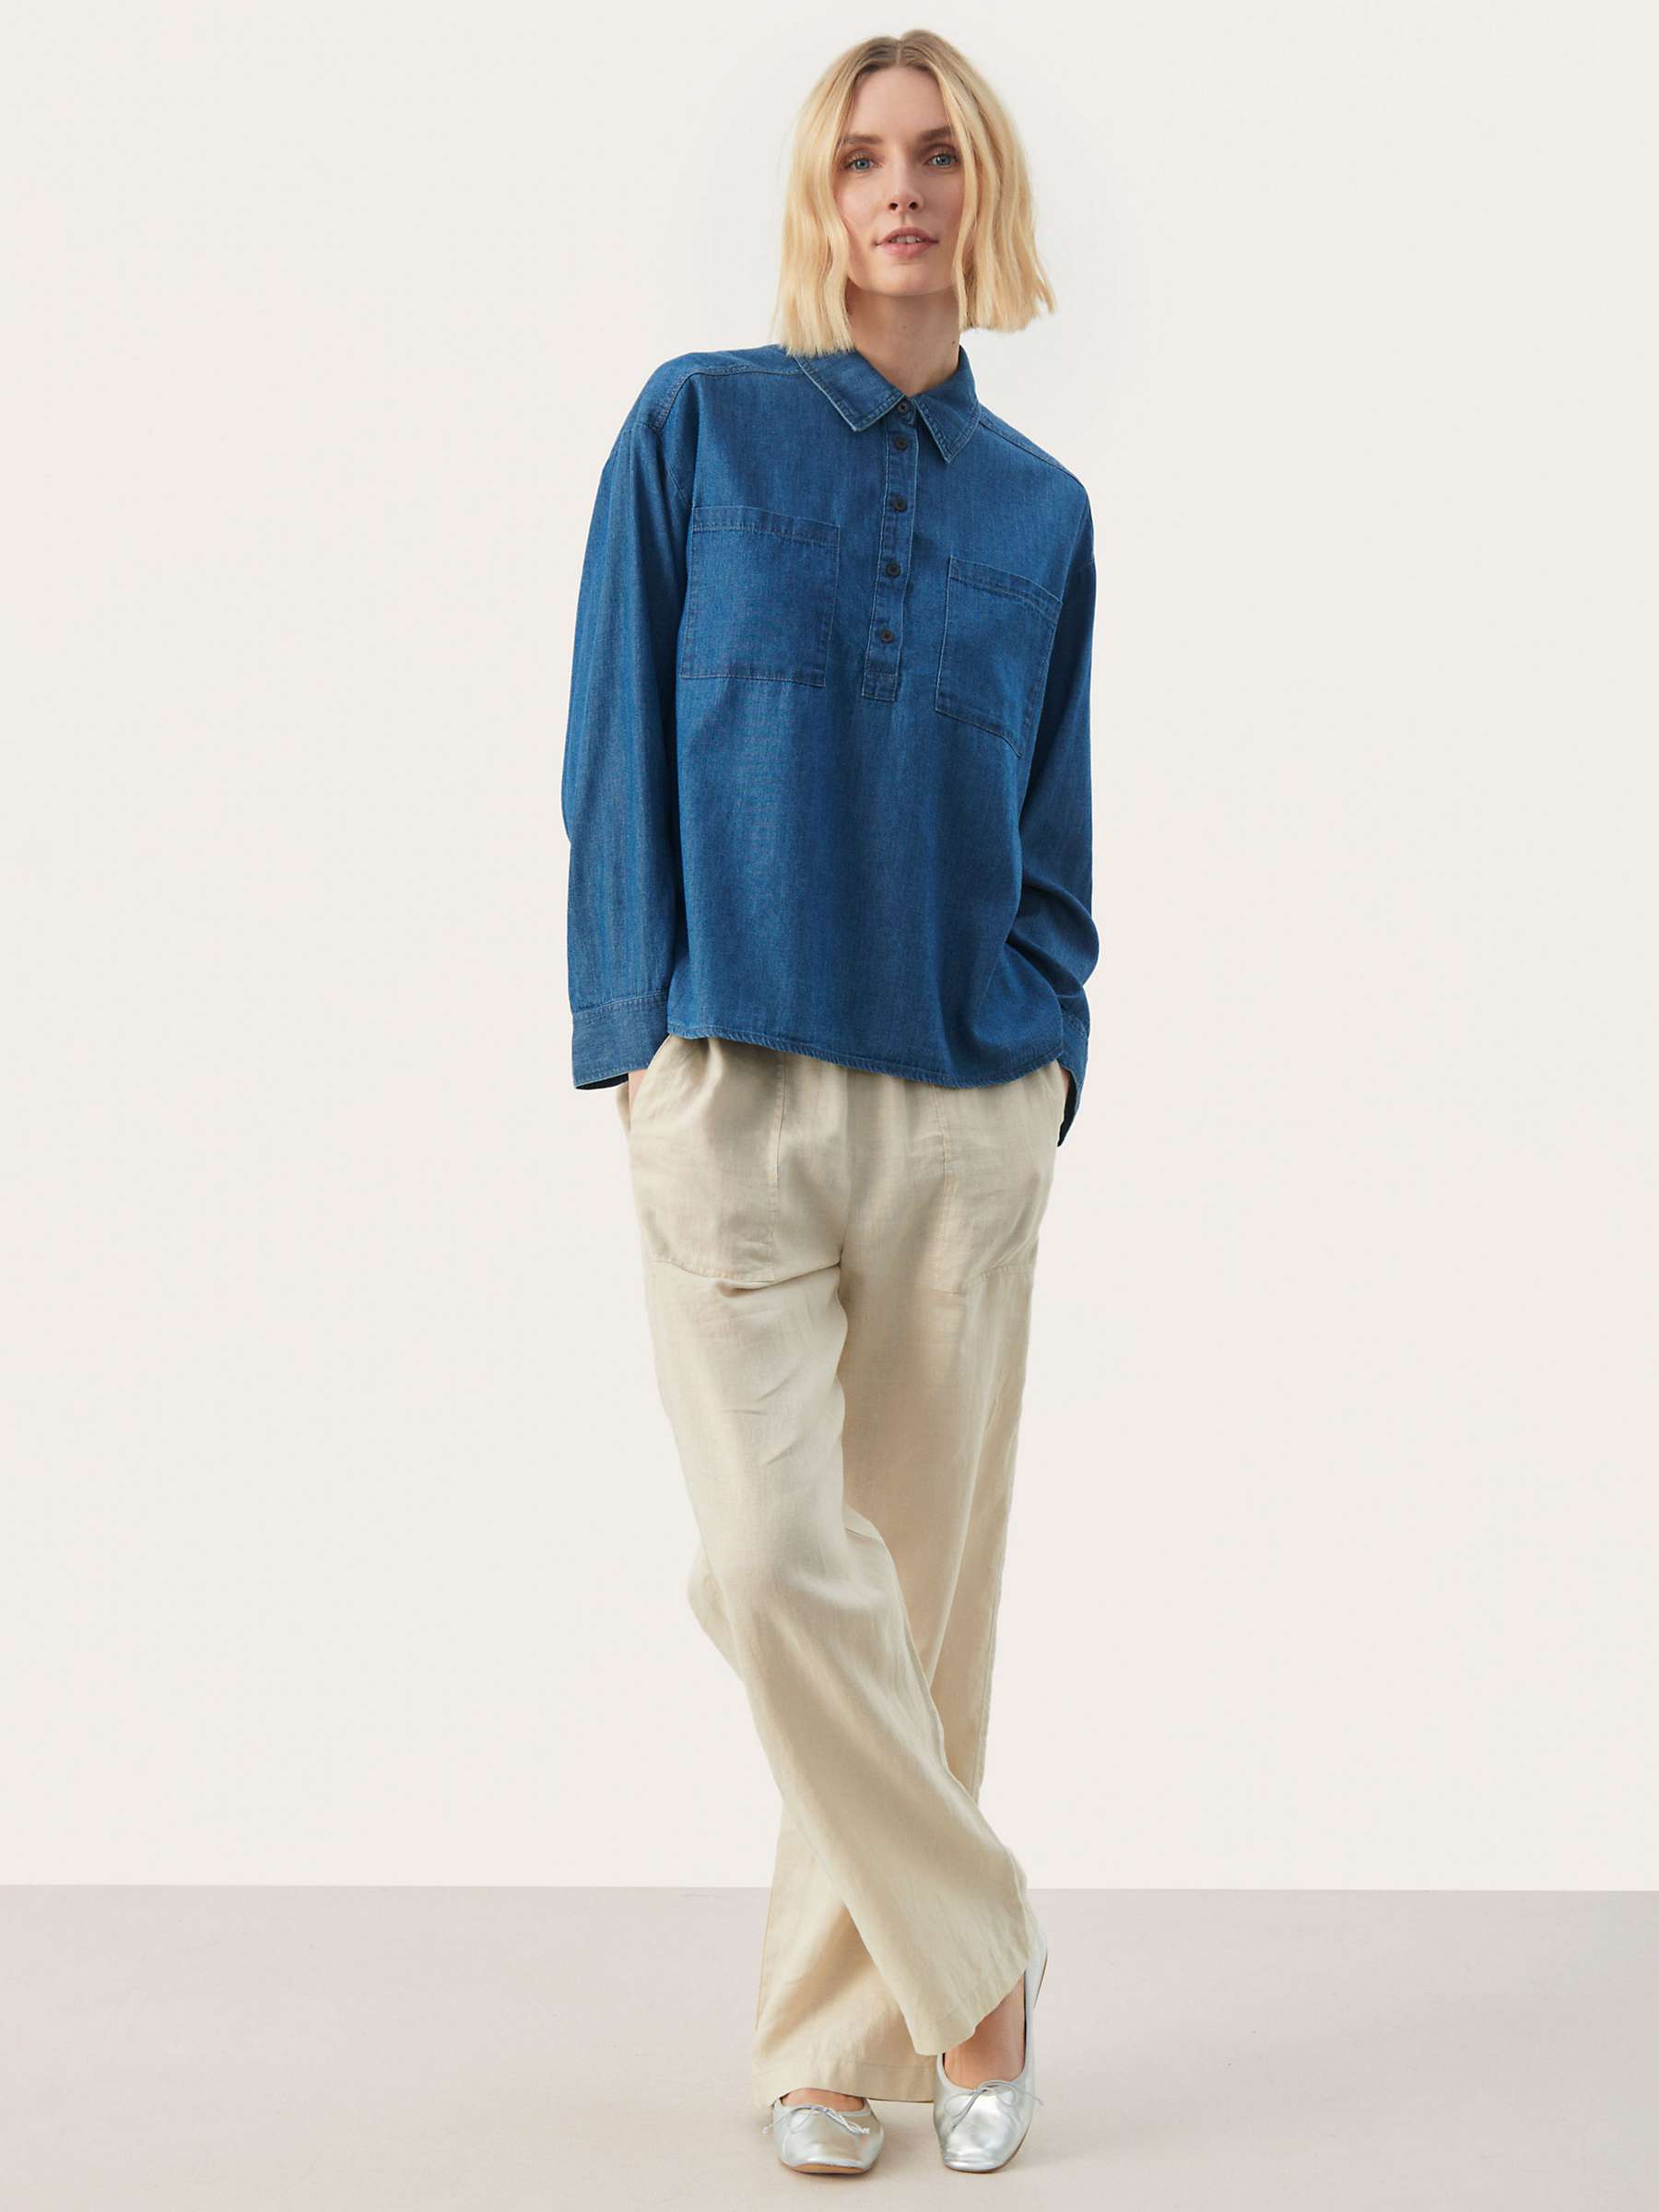 Buy Part Two Emmarose Denim Shirt, Blue Online at johnlewis.com